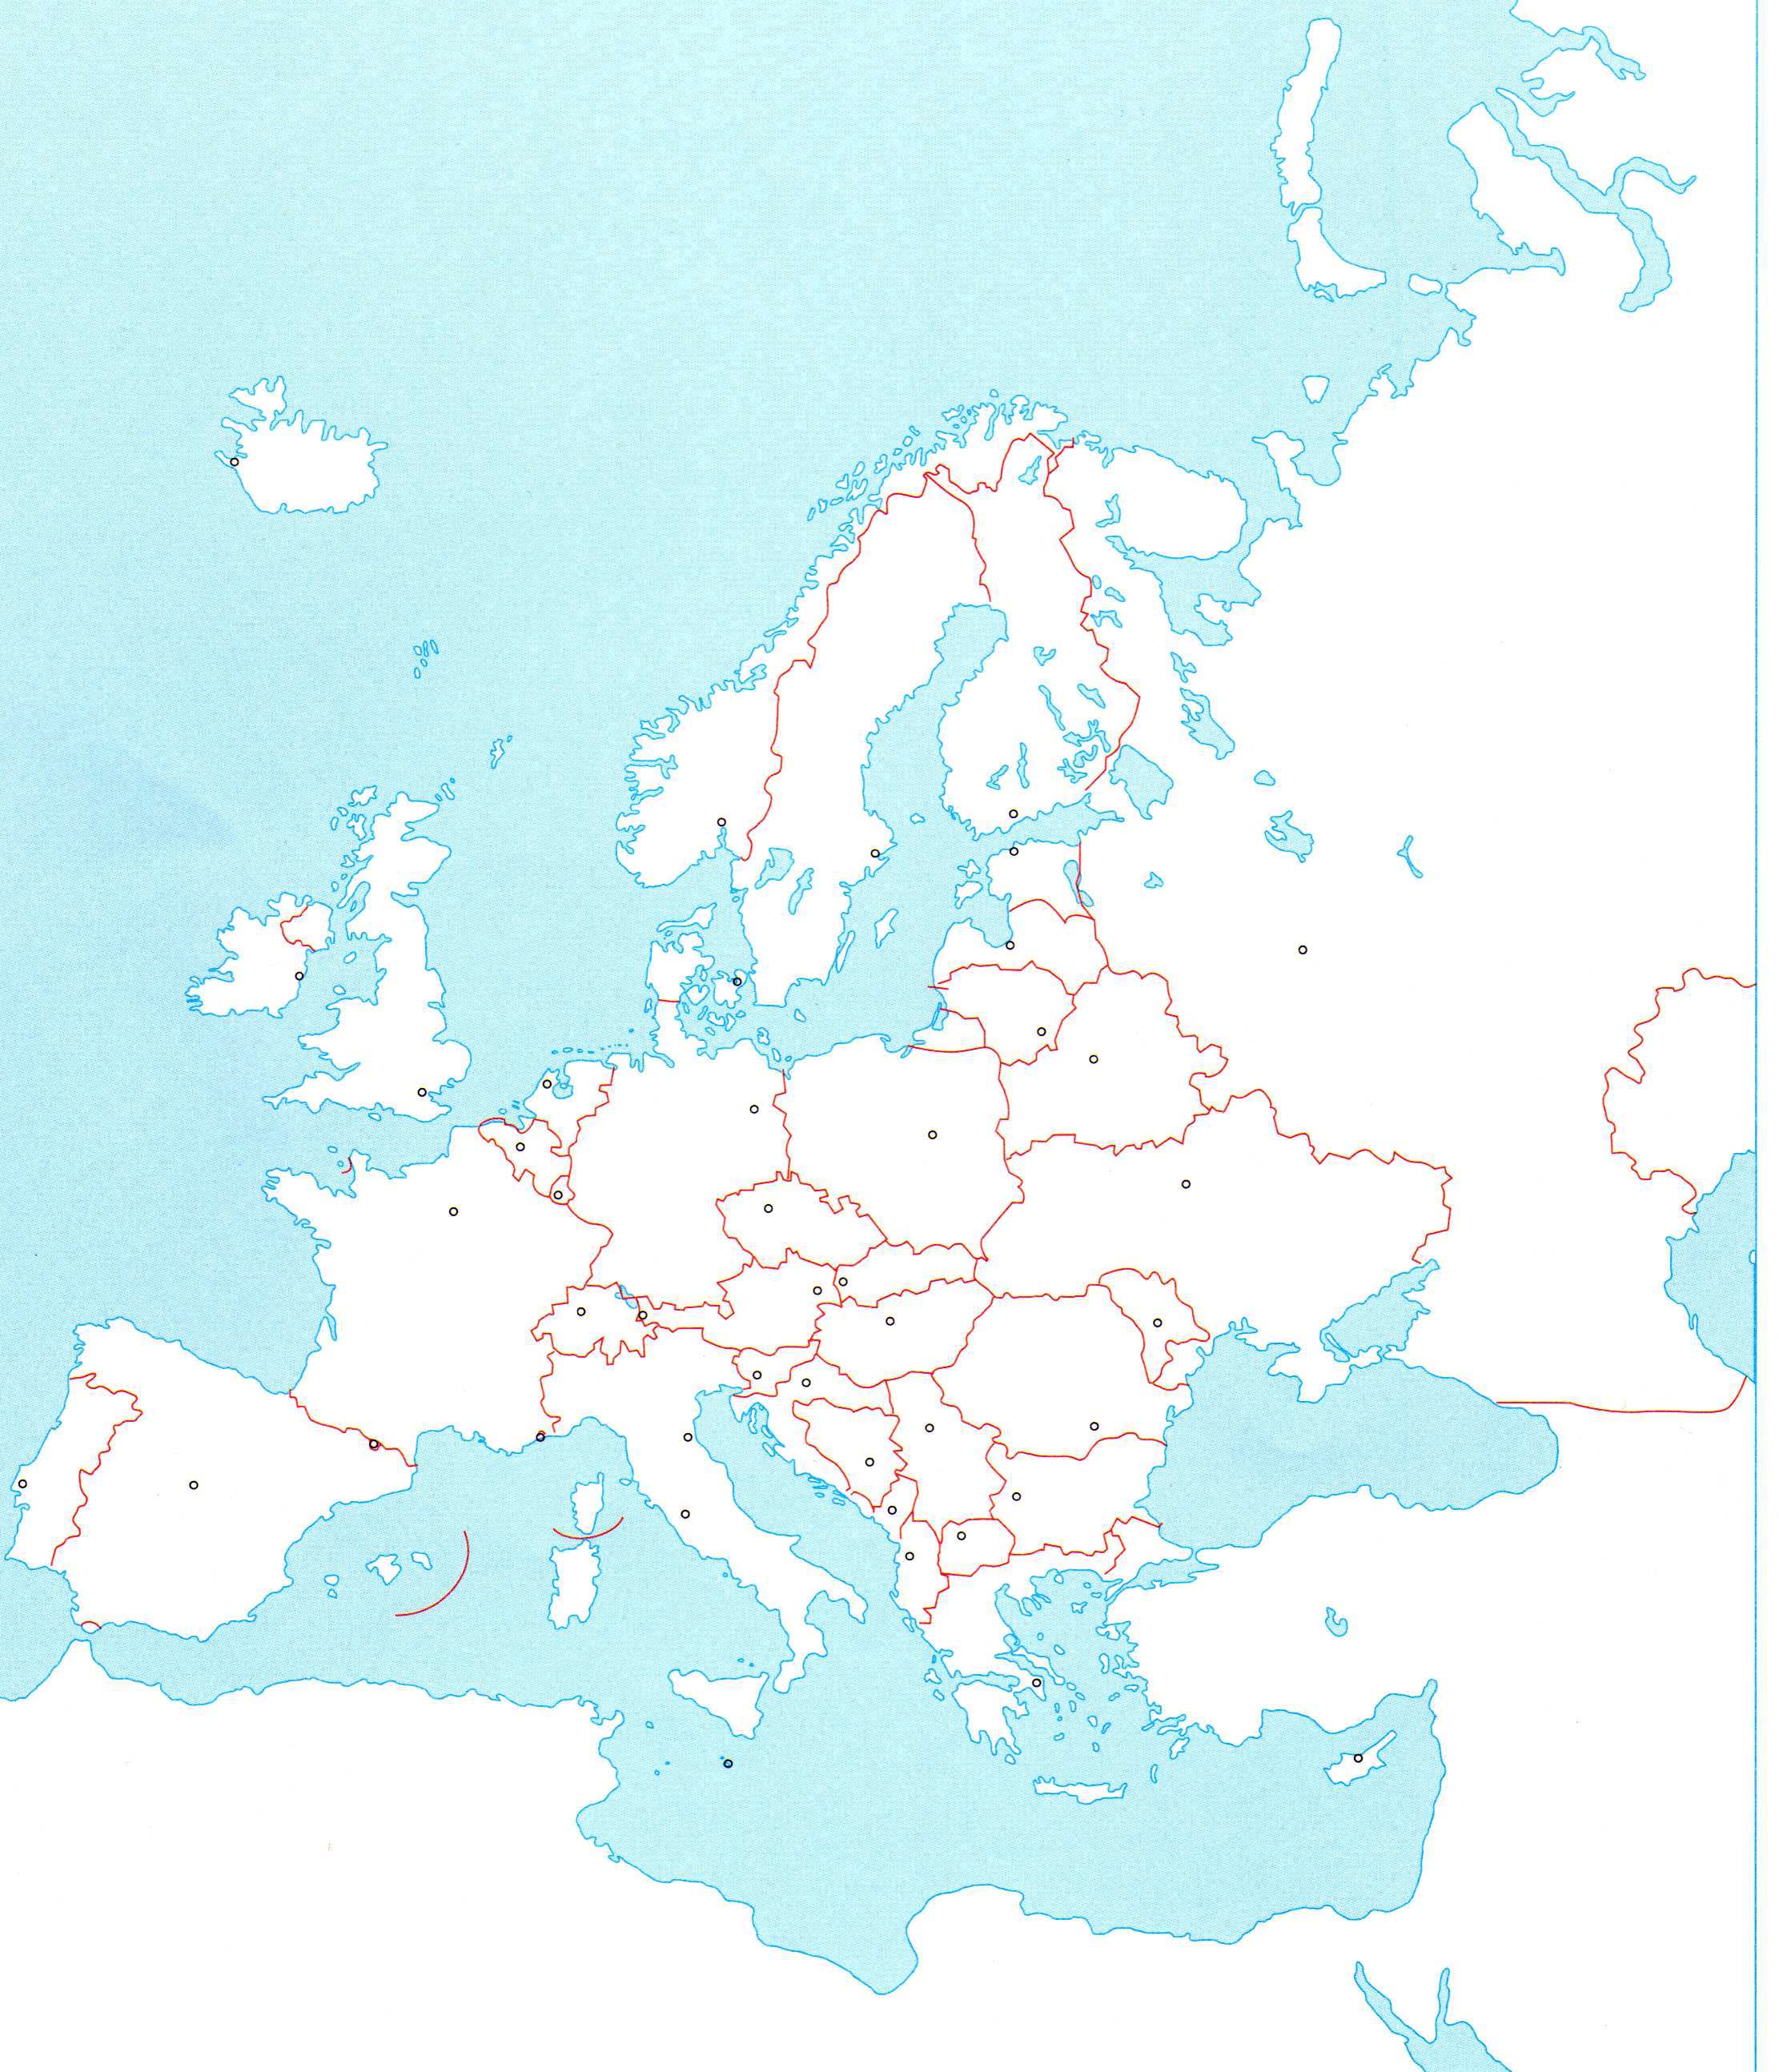 slijepa karta sjeverne europe Osnovna škola Fažana   7.razred slijepa karta sjeverne europe